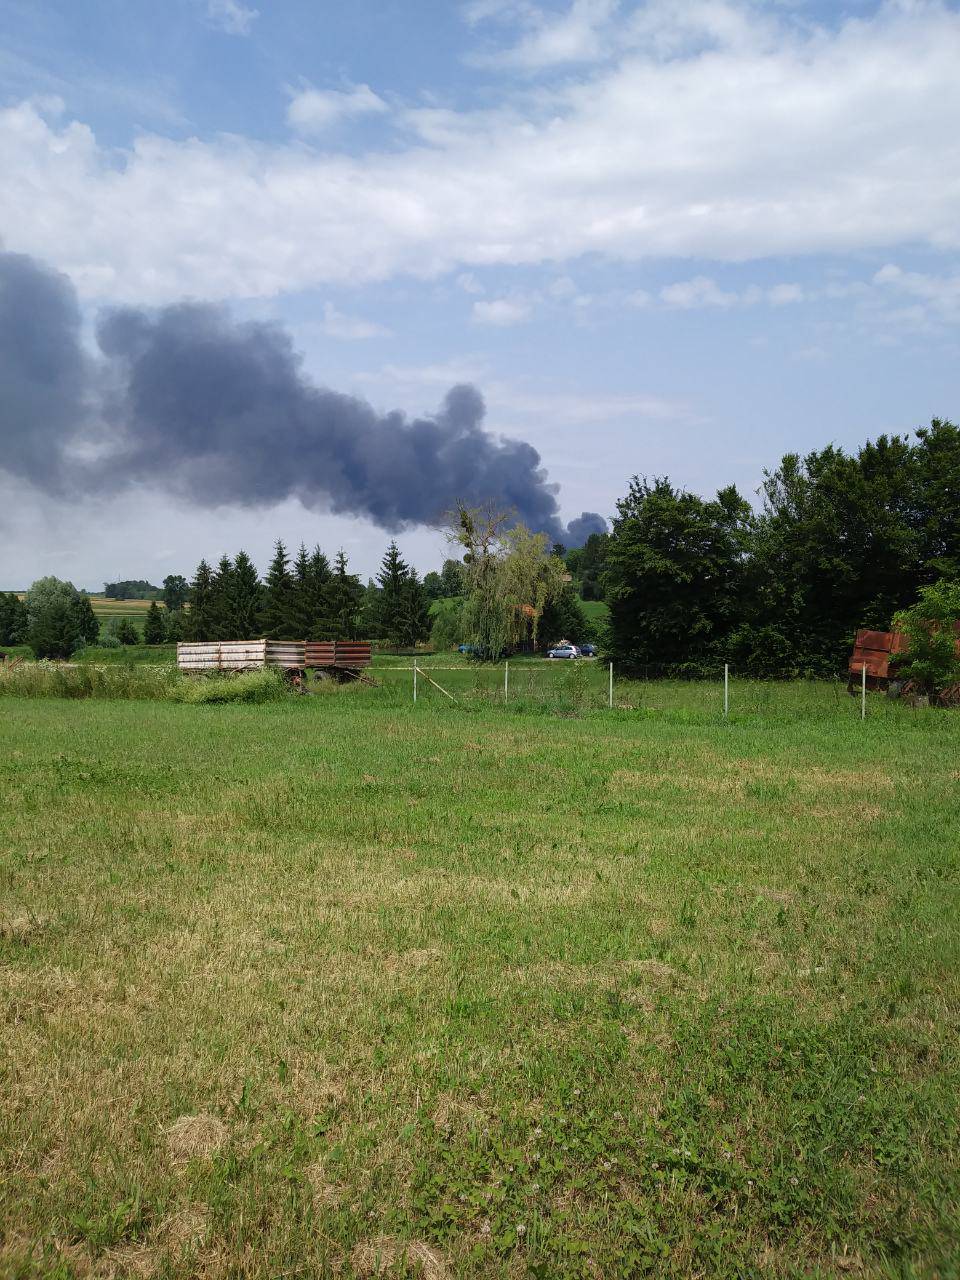 Drama u Grubišnom Polju: Vatrogasac se nagutao dima